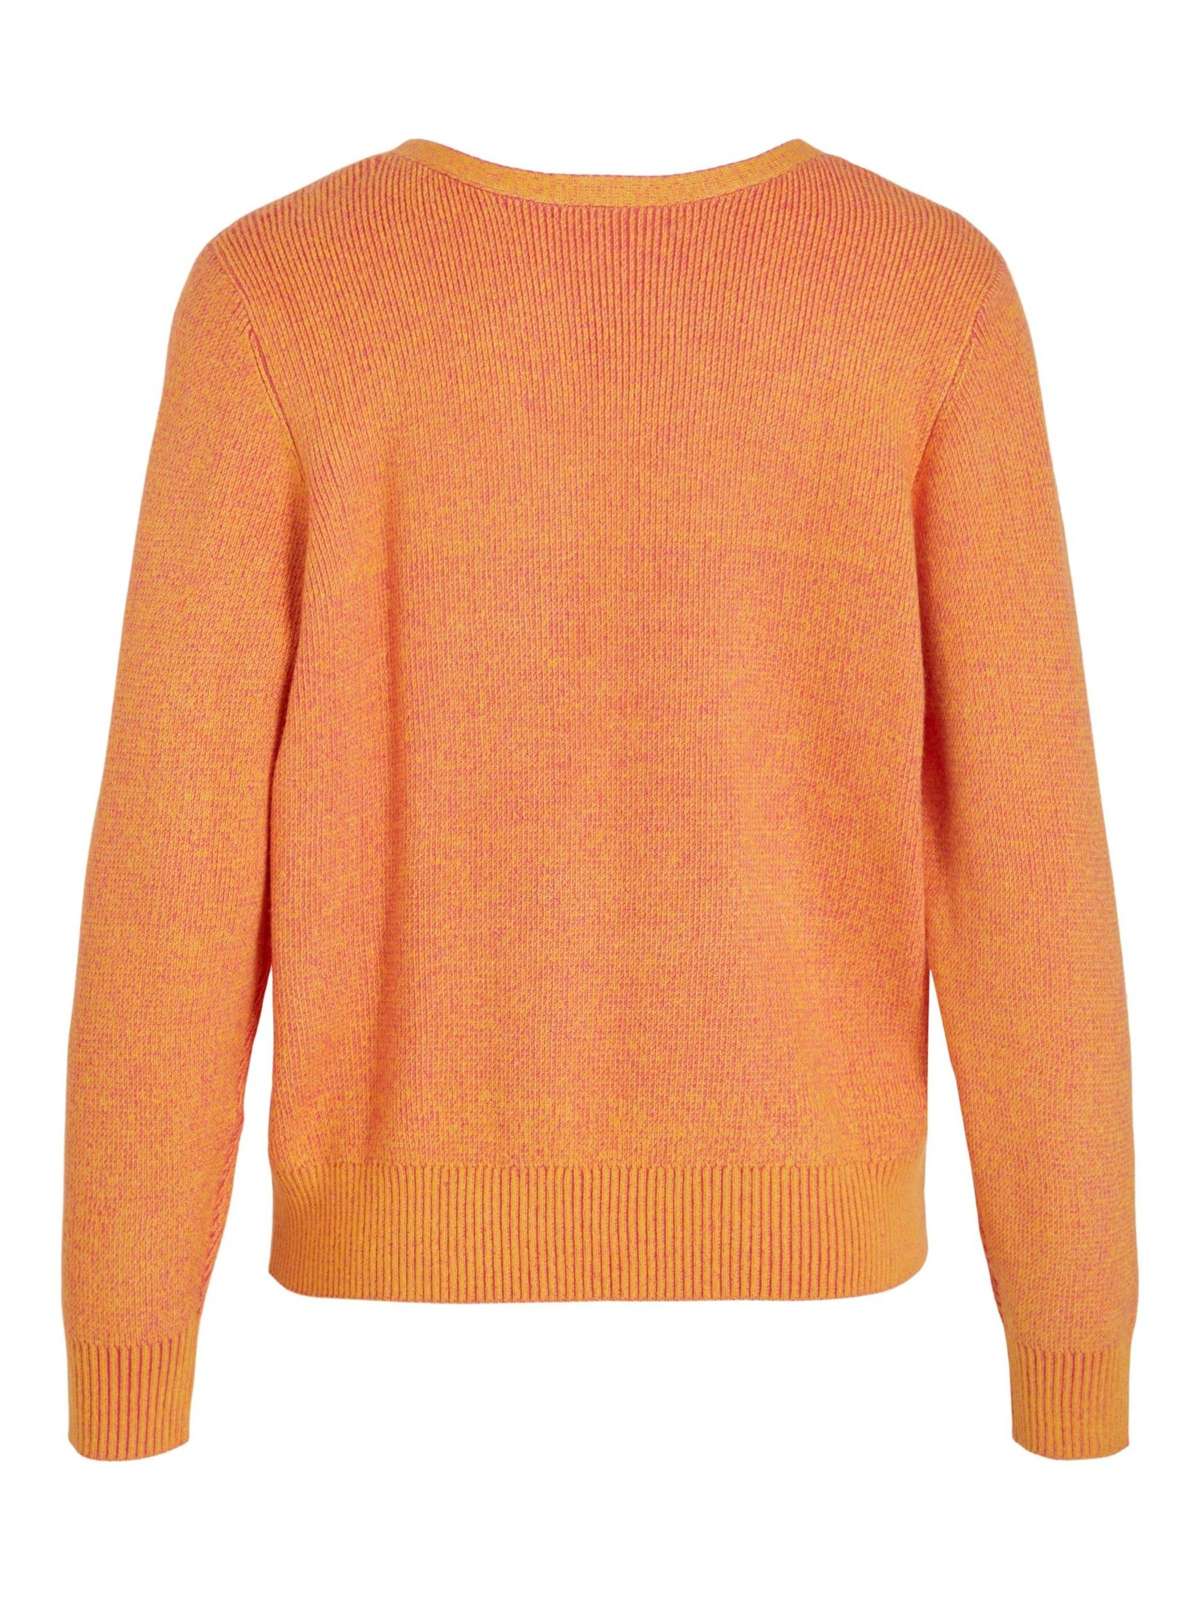 Вязаный свитер Ирил (1 шт.) однотонный/без деталей